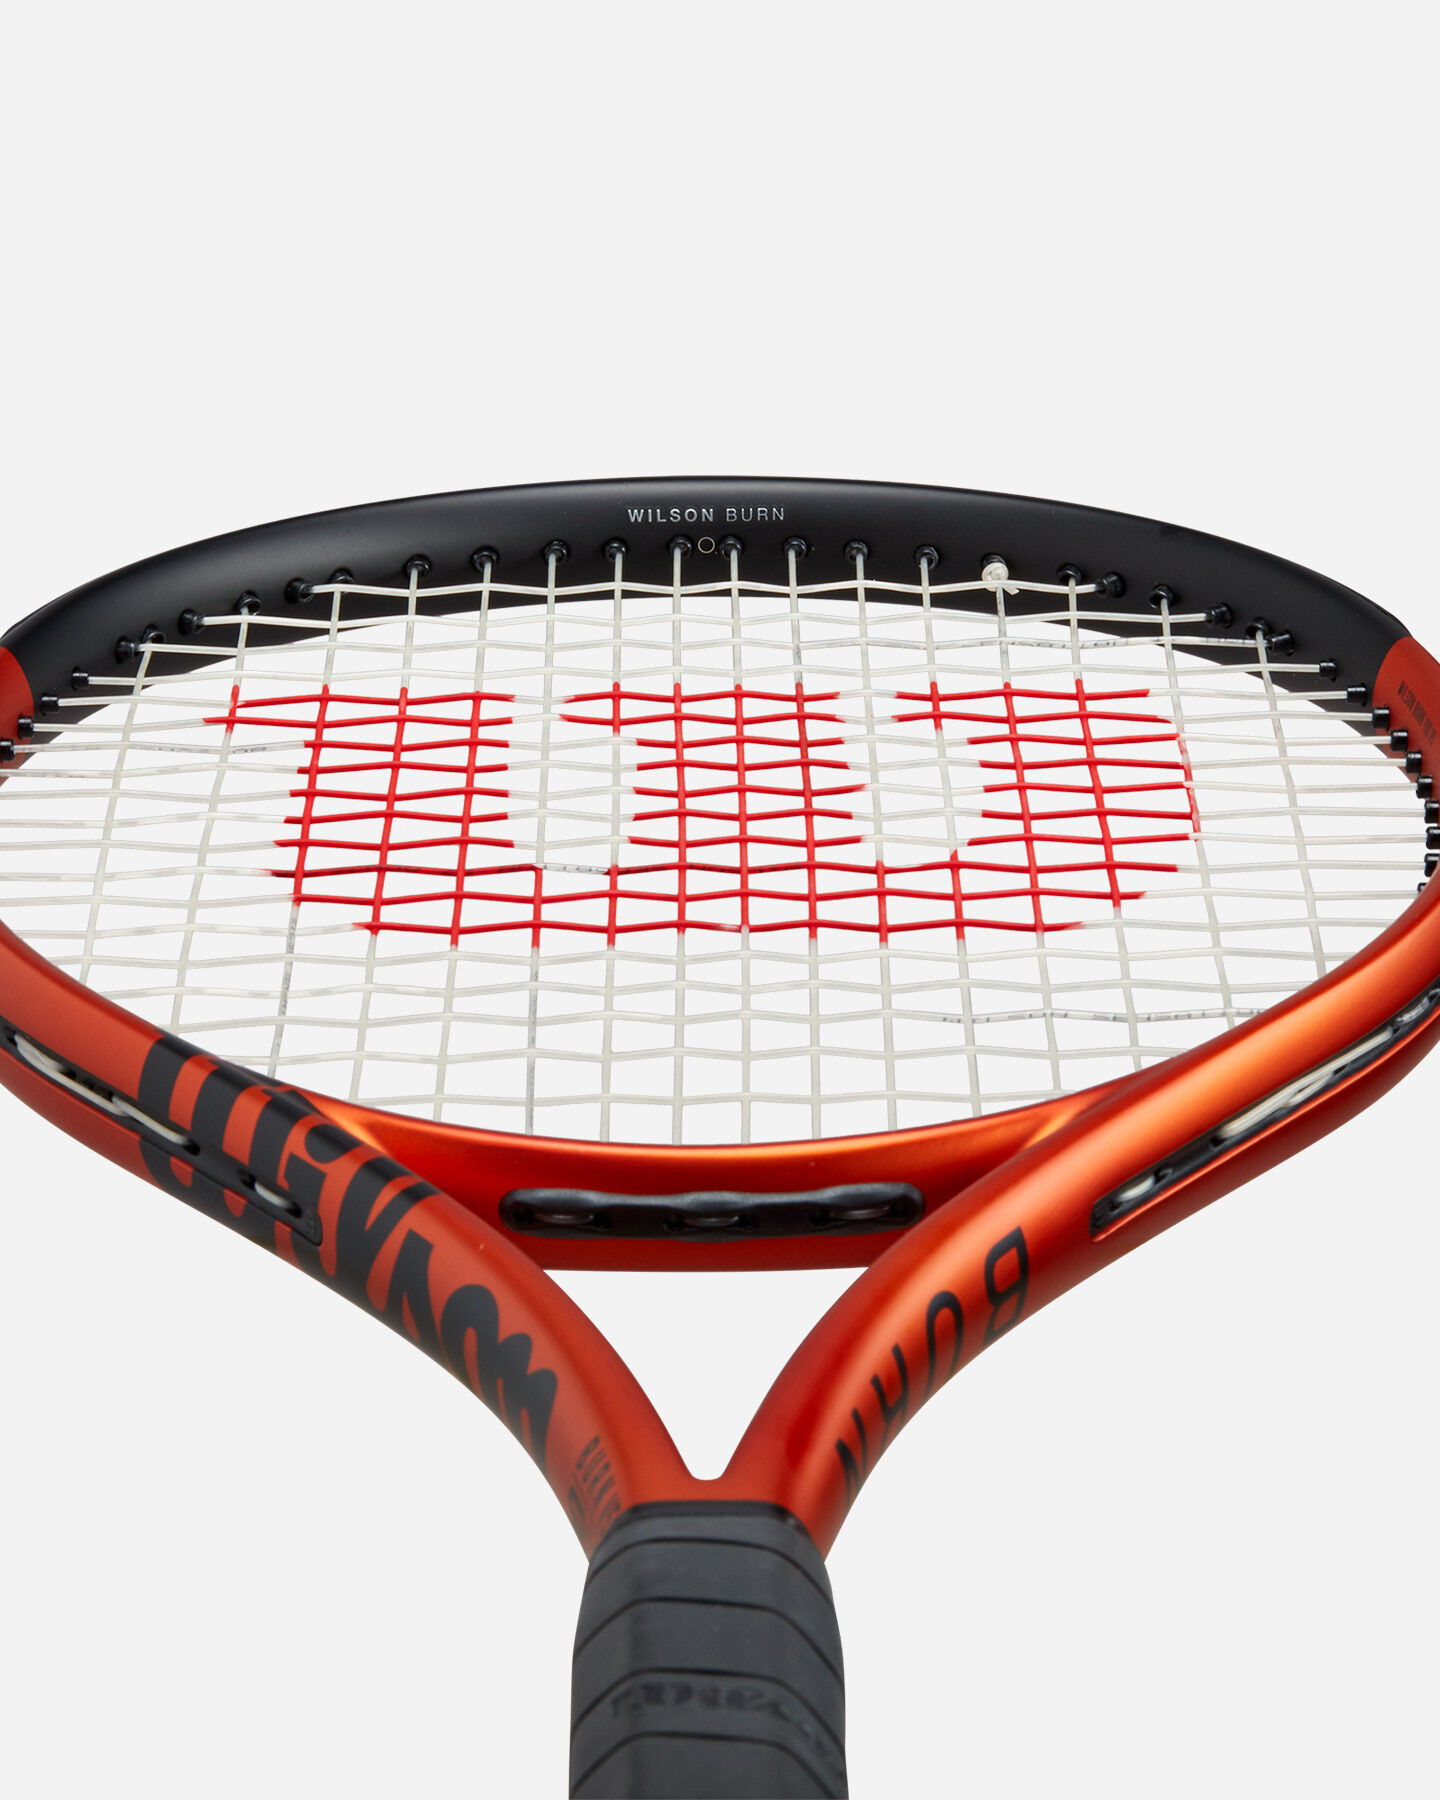  Racchetta tennis WILSON BURN 100 V5.0 RKT  S5572695|UNI|0 scatto 3